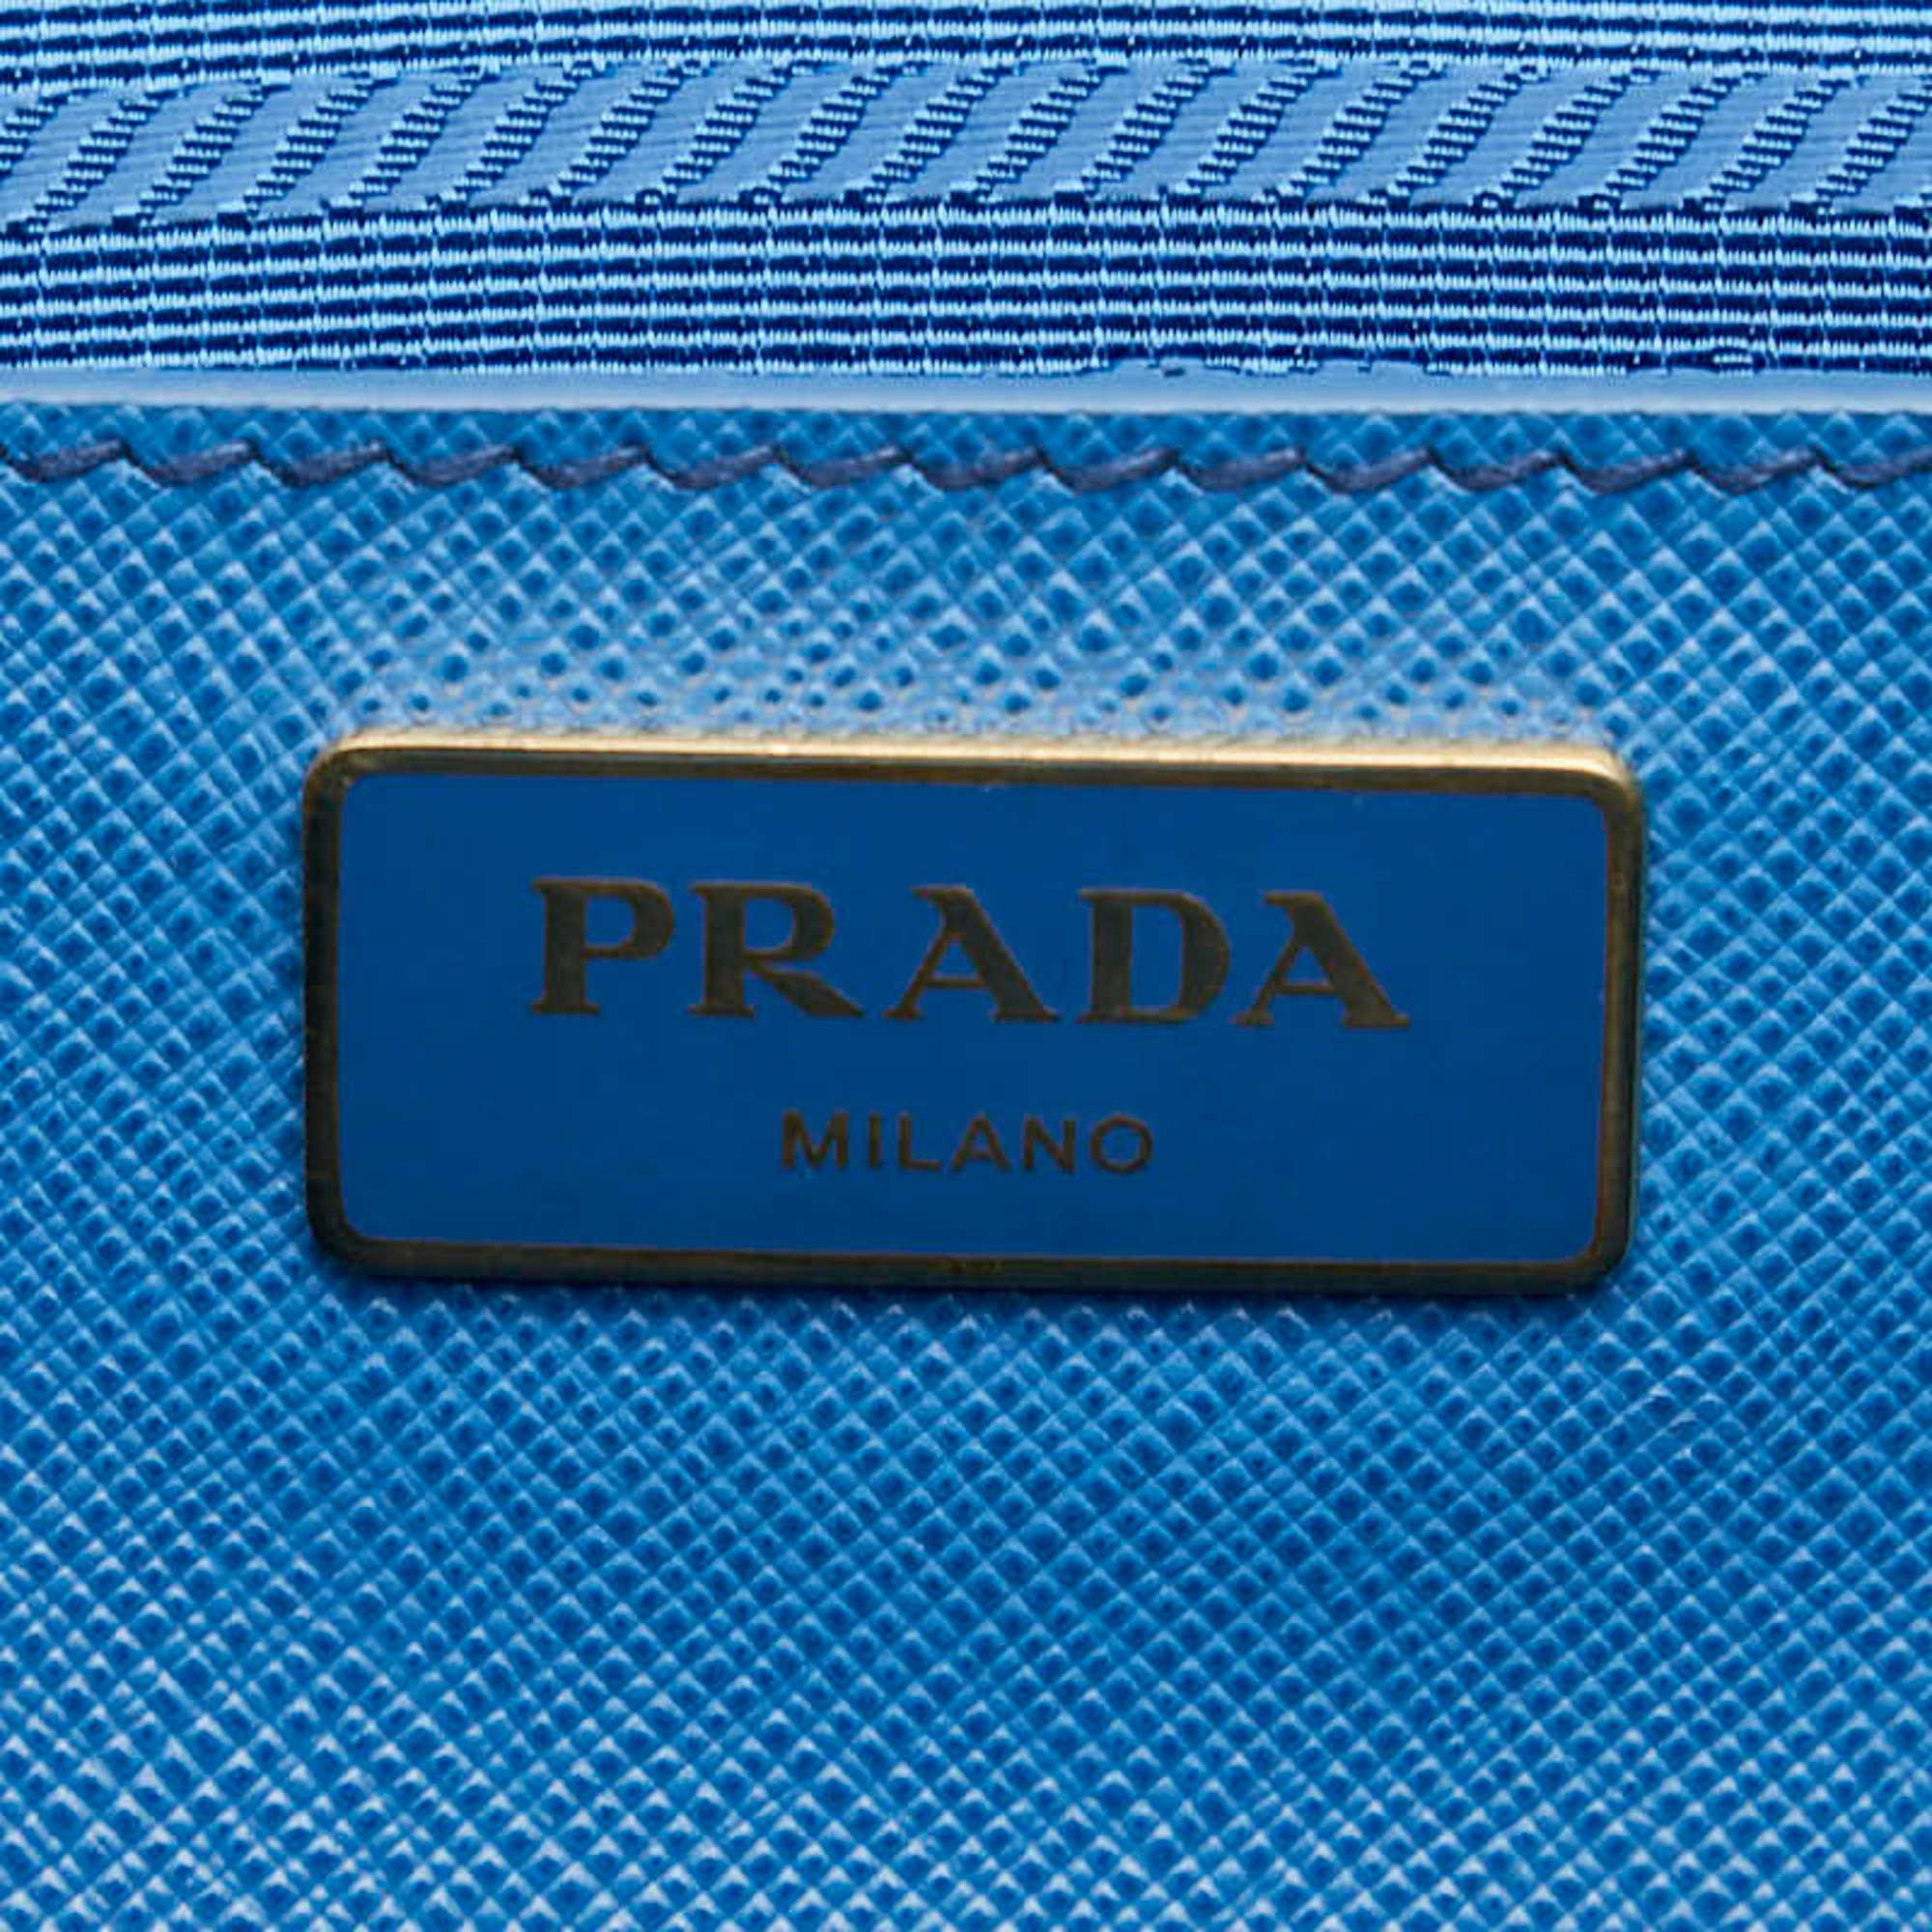 Prada Saffiano Handbag Blue Leather Women's PRADA